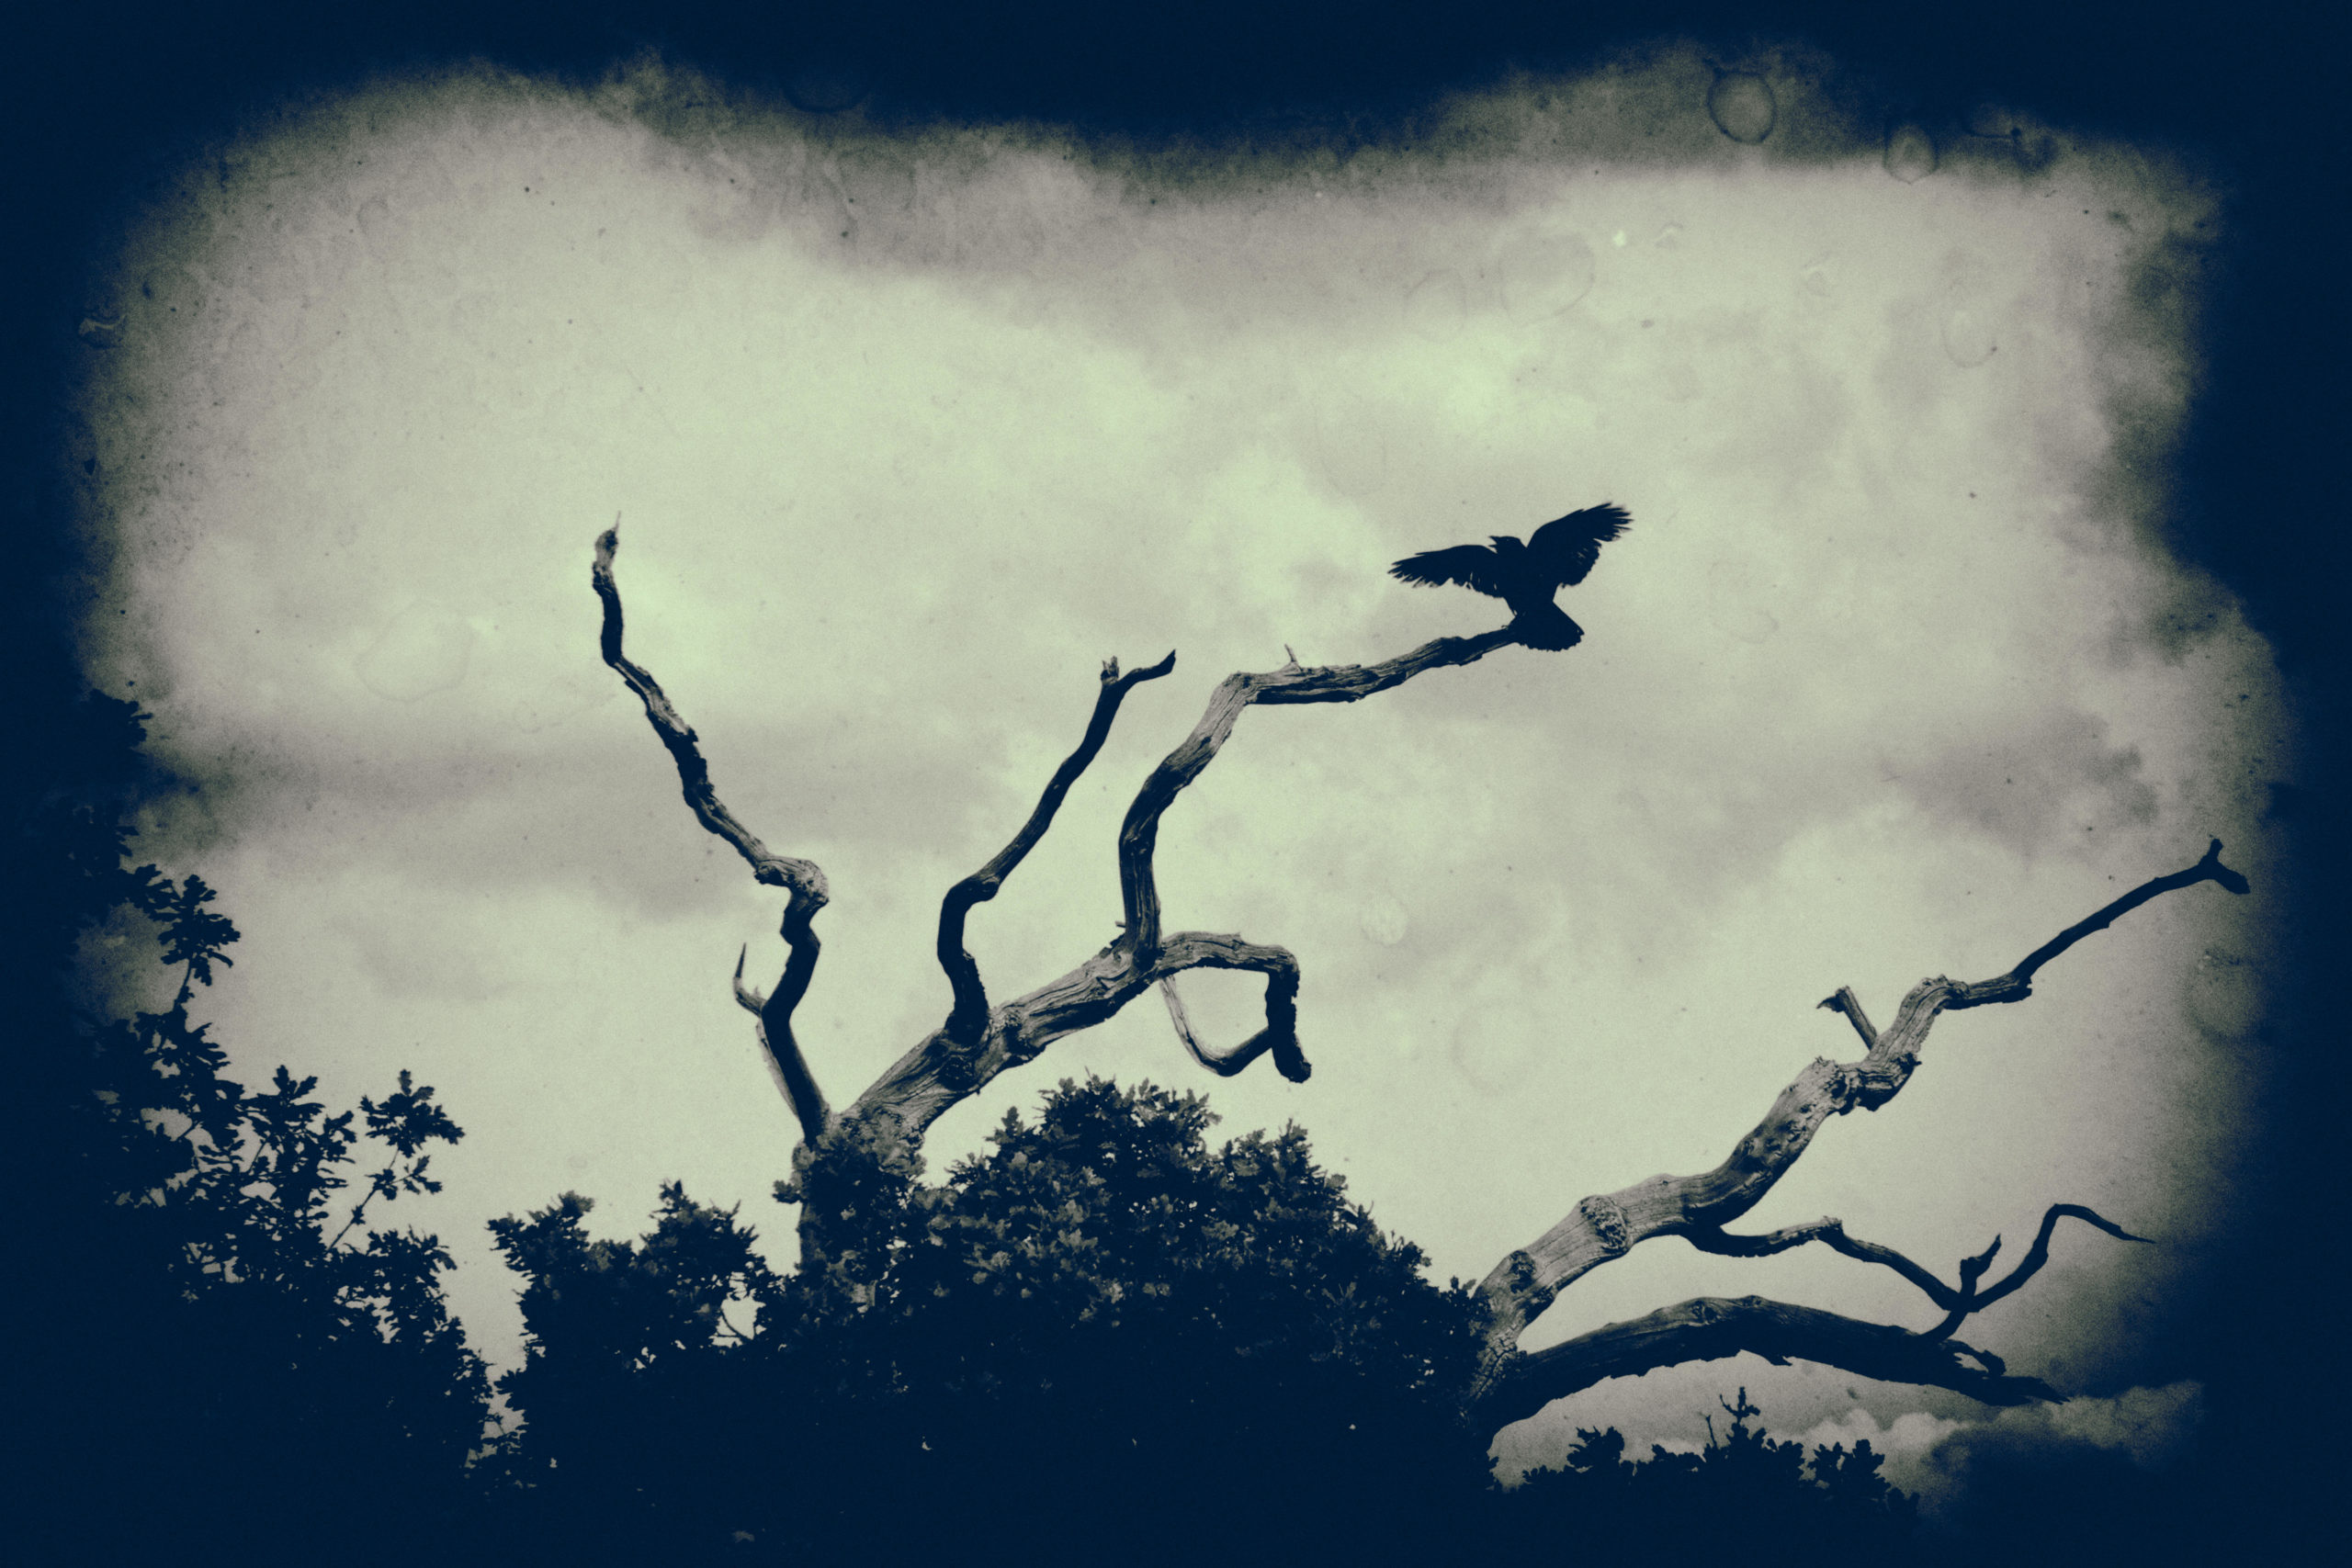 Spooky crow in tree